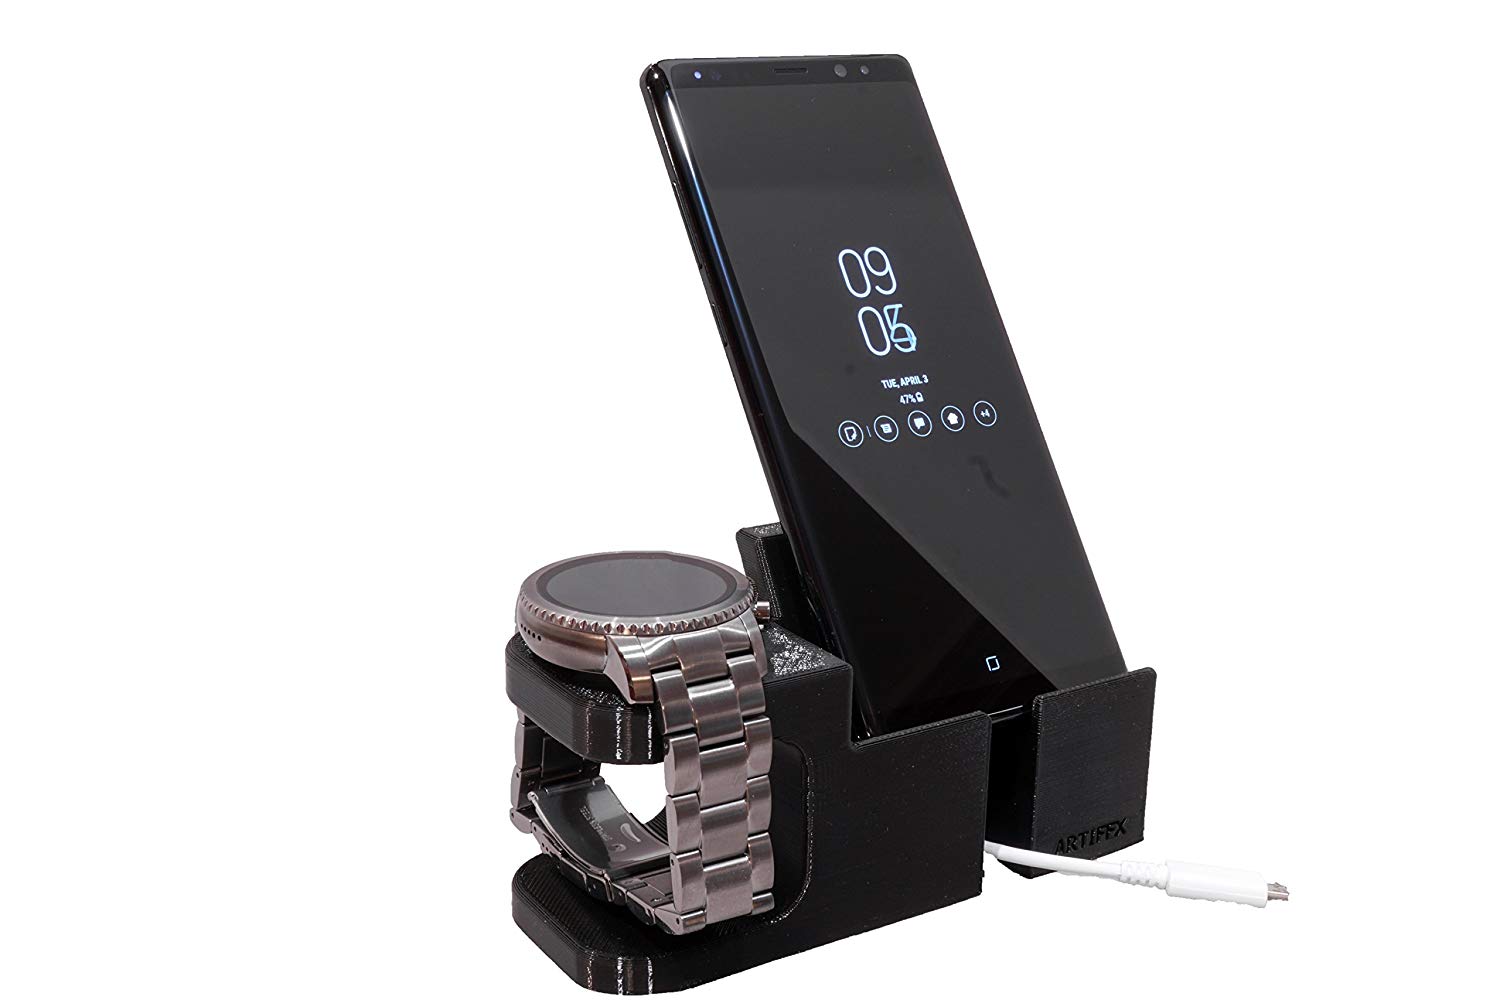 Fossil Q Marshal/ Gen3 / MK Bradshaw/ Skagen/ Emporio Armani/ Diesel/ Smartwatch Phone Combo by Artifex Design (Wireless charger) - Artifex Design 3D